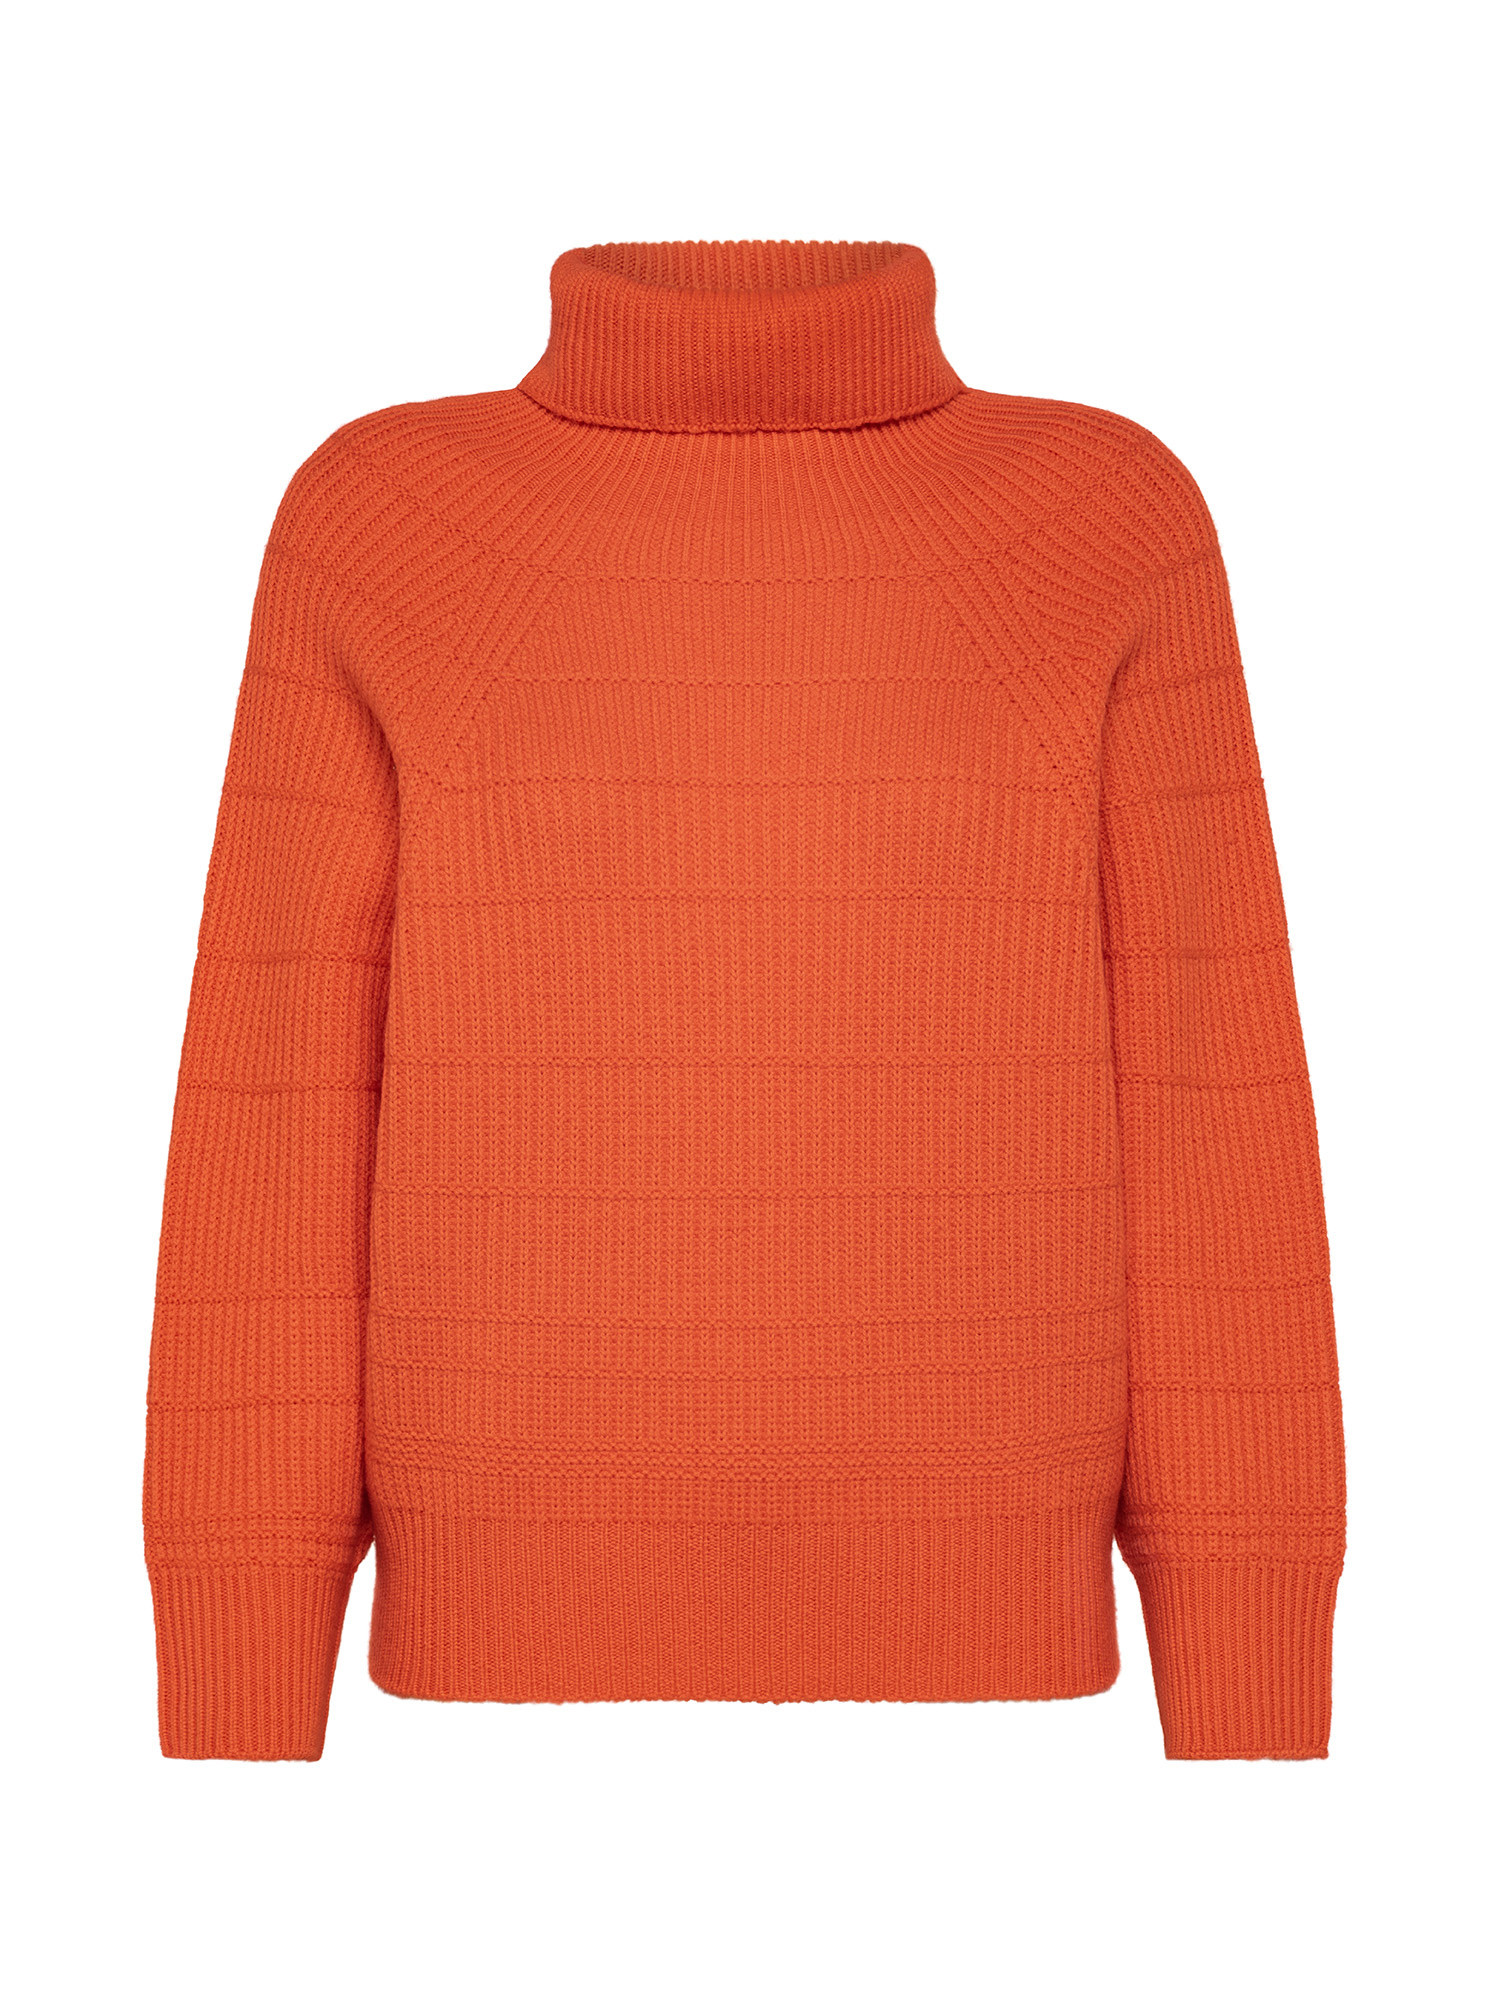 K Collection - Turtleneck pullover, Orange, large image number 0